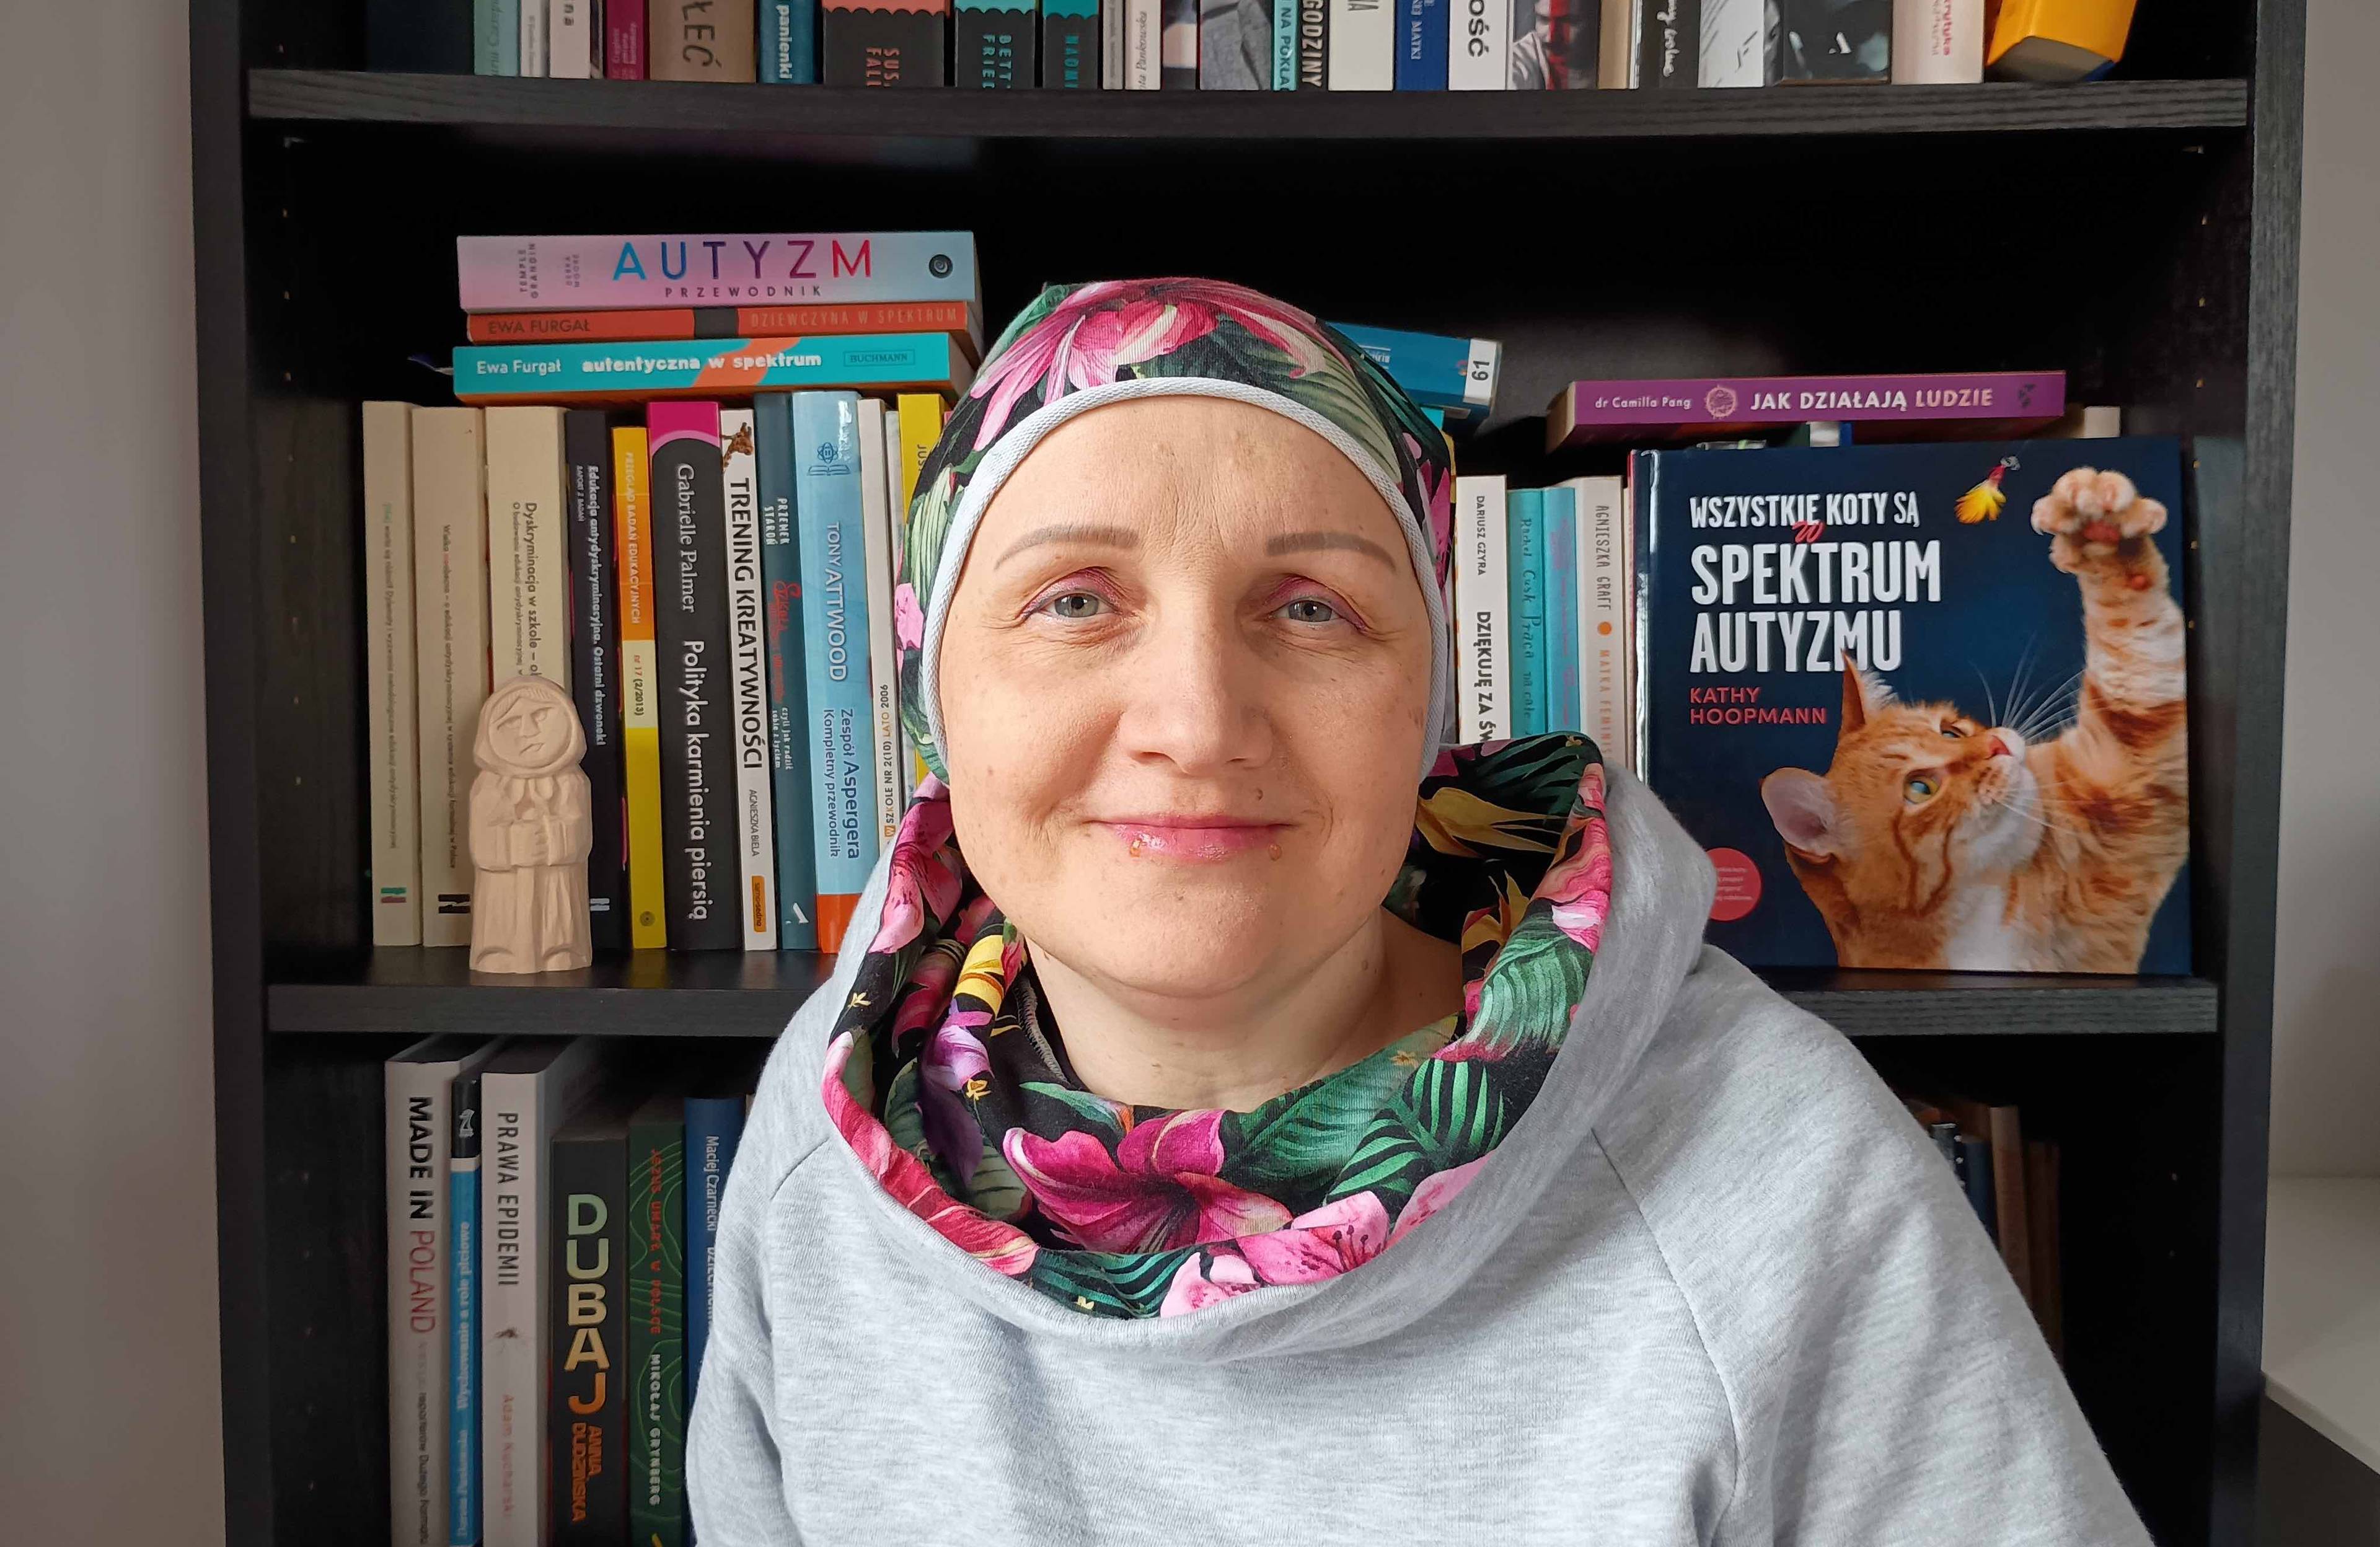 Kobieta w chustce na głowie na tle biblioteczki, na półce stoi książka pod tytulwem Wszystkie koty są w spektrum autyzmu